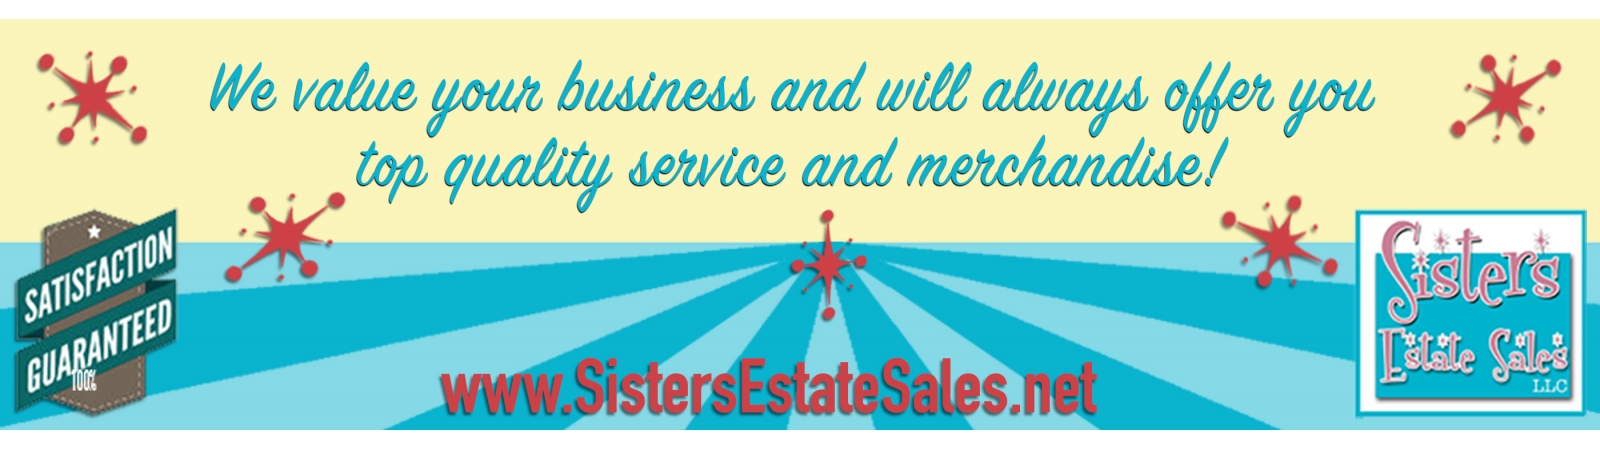 Sisters Estate Sales, LLC | AuctionNinja